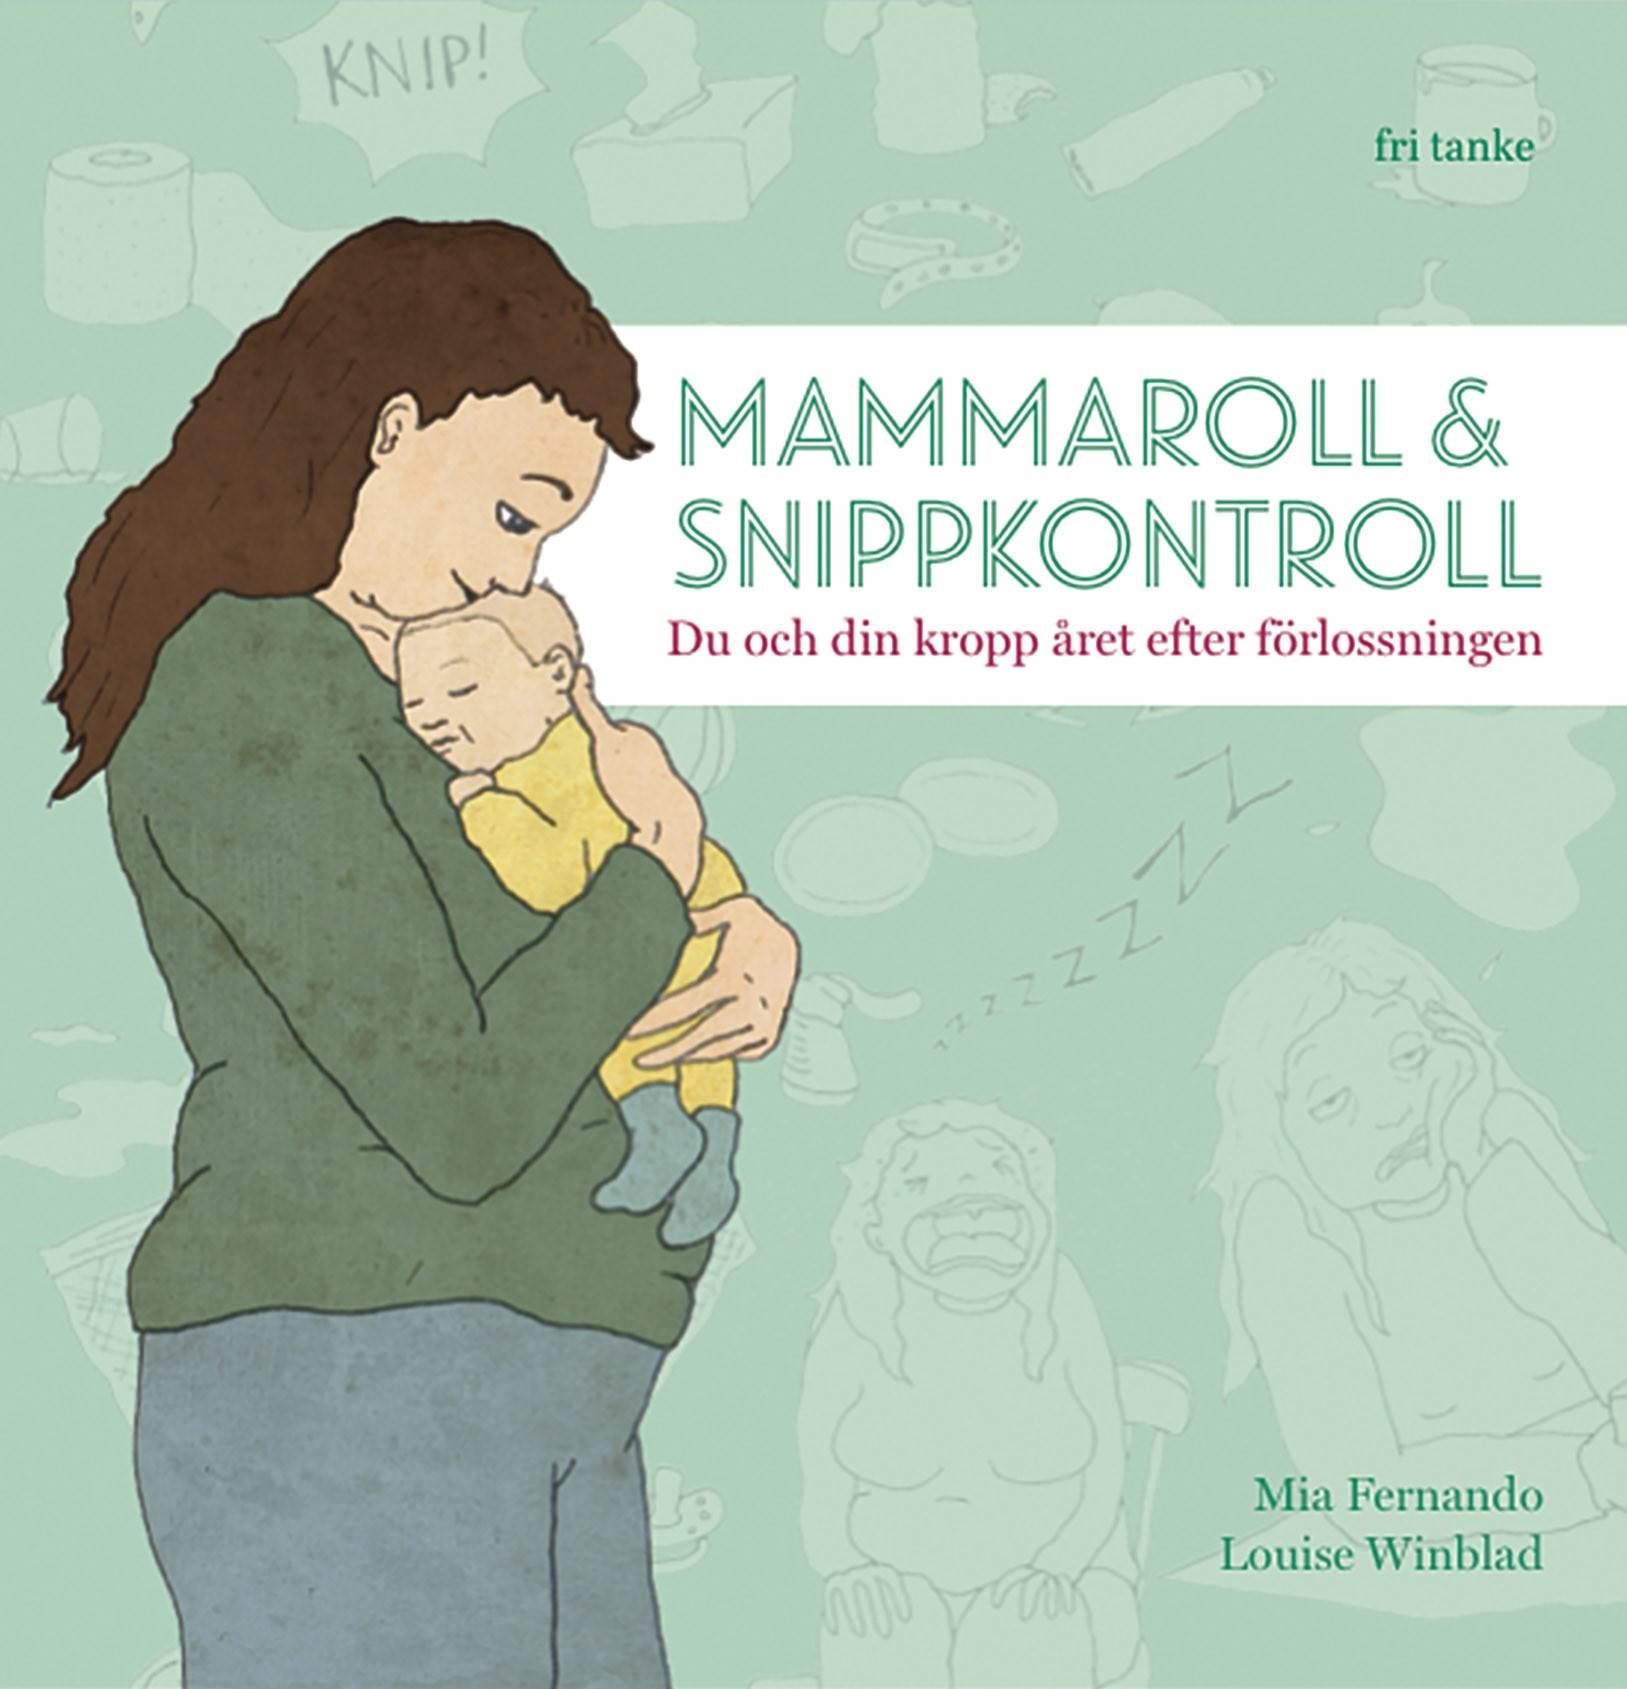 Mammaroll & snippkontroll : du och din kropp året efter förlossningen